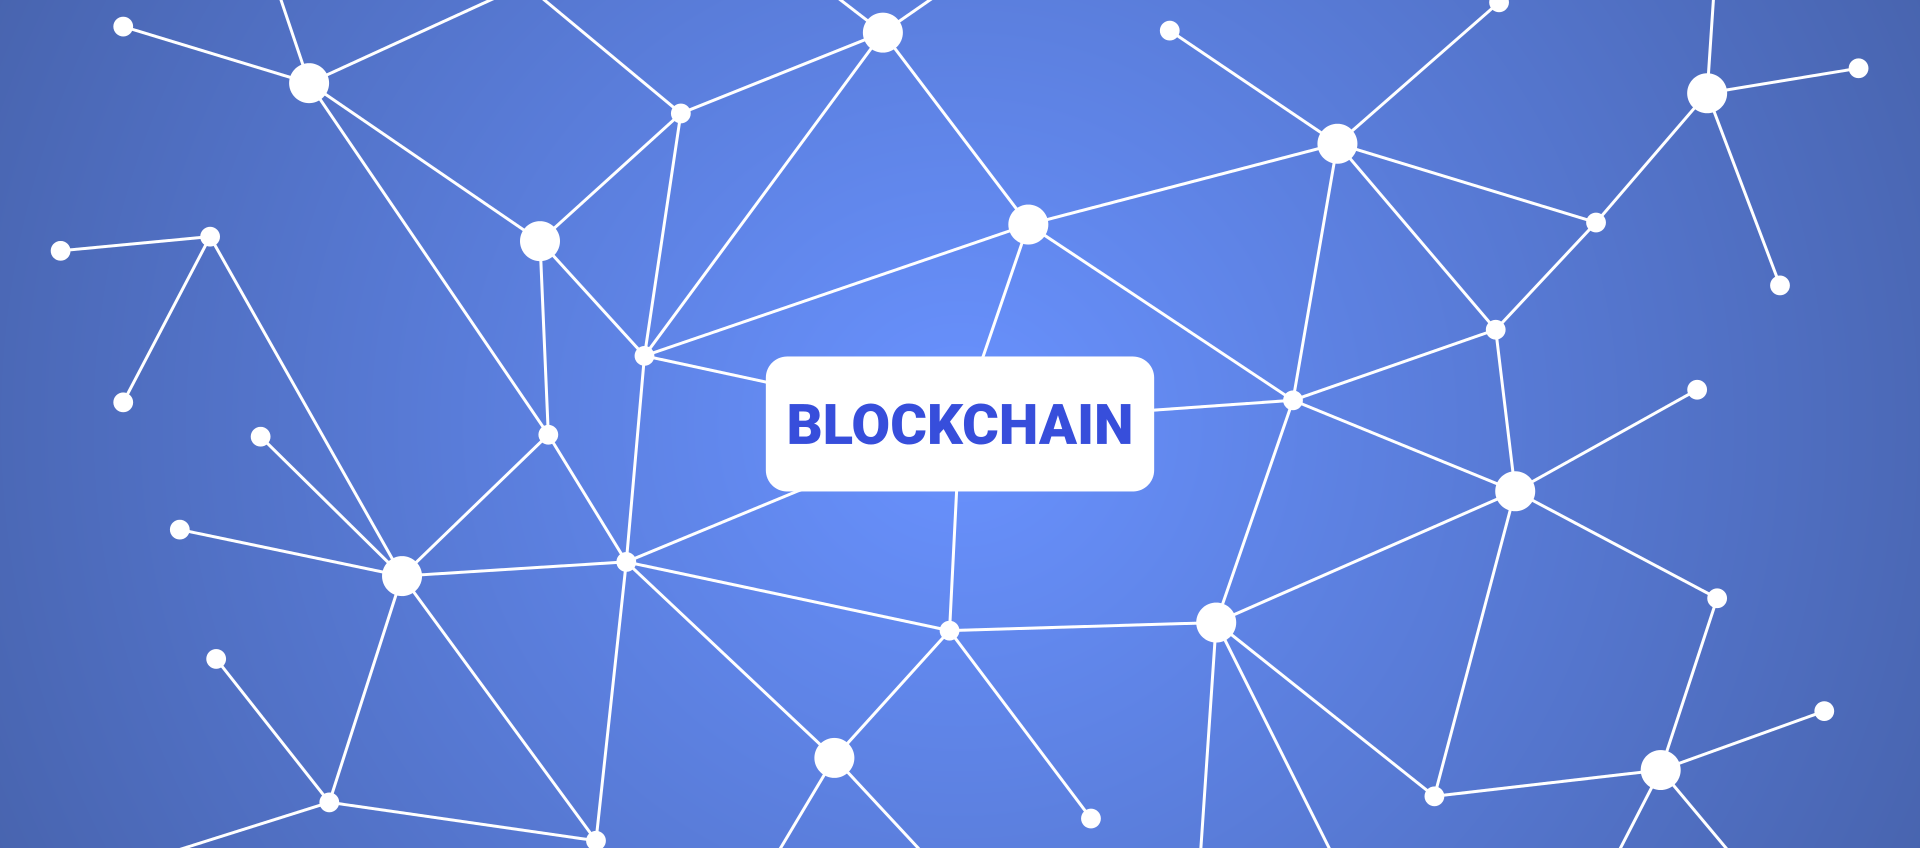 Blockchain, muovi il tuo primo passo